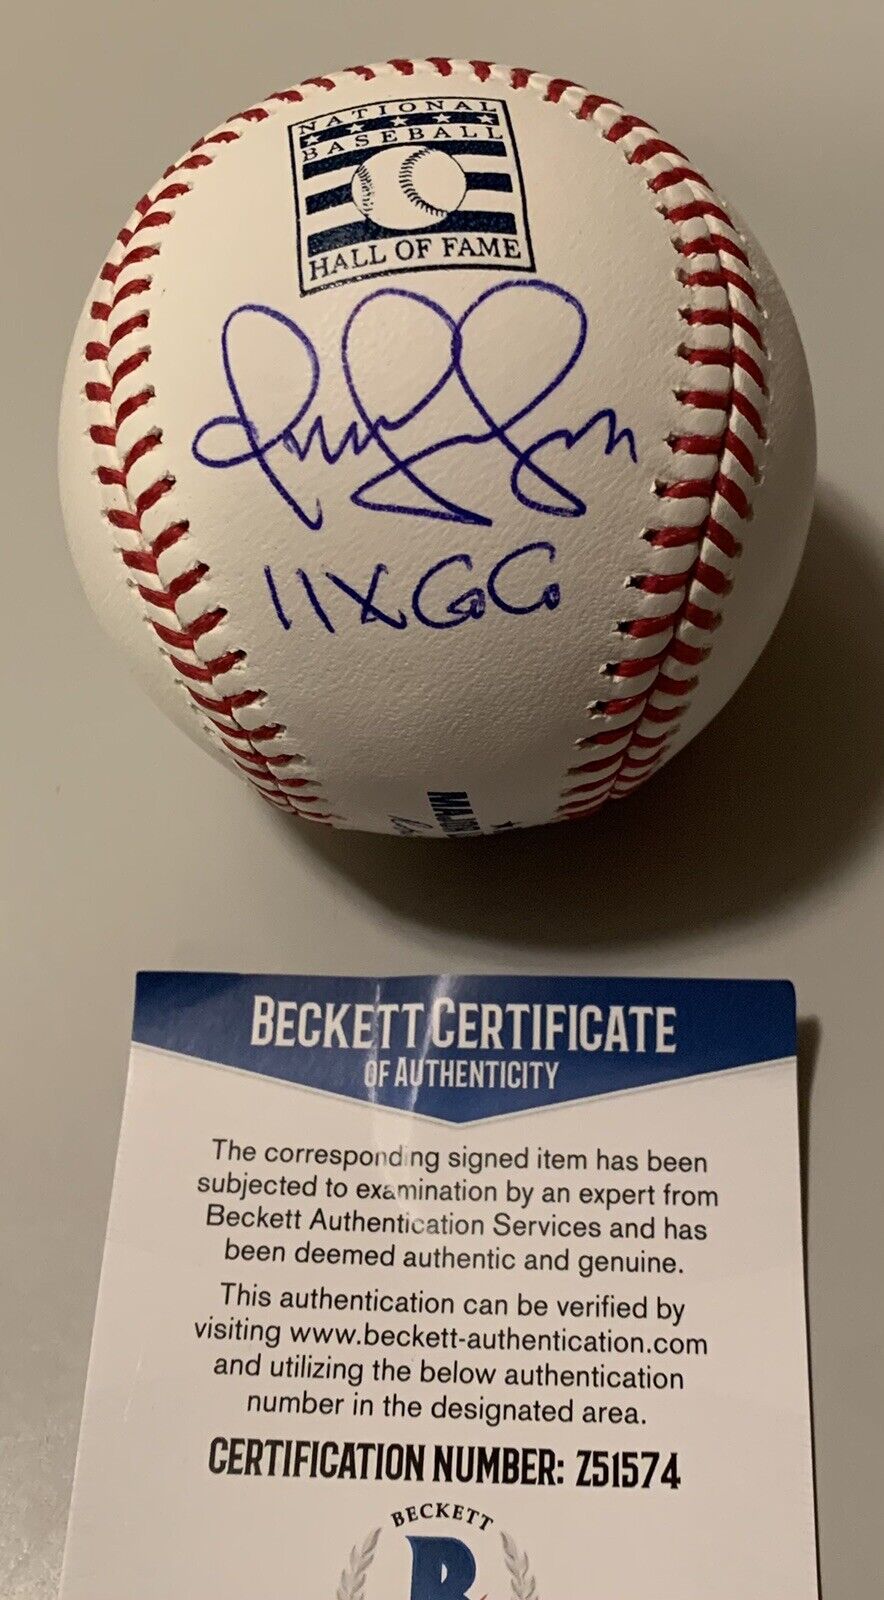 Omar Vizquel Cleveland Indians “11 X GG” Signed Major League Baseball Beckett